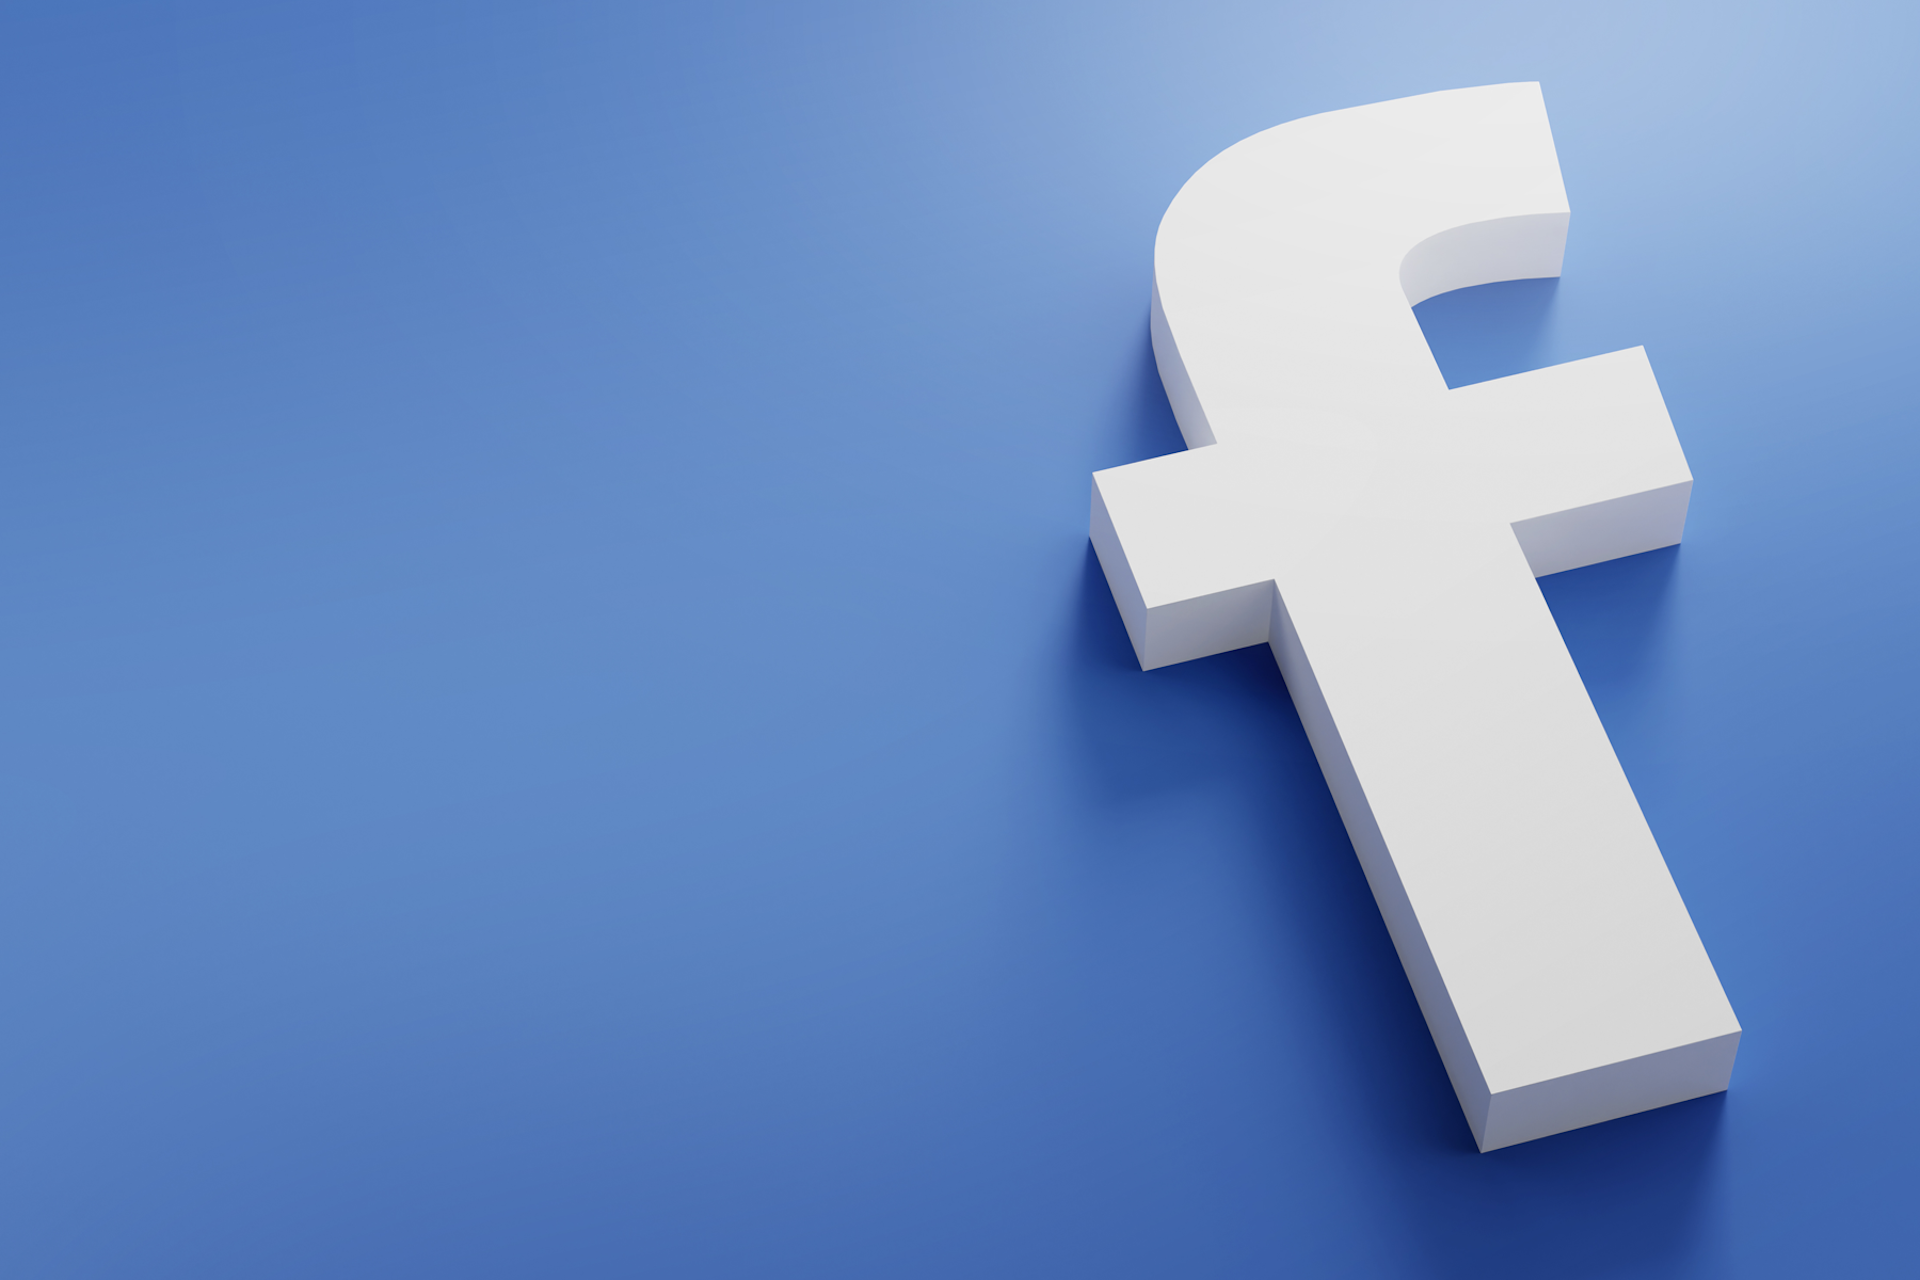 Large Facebook logo on blue background. Facebook management tips blog post